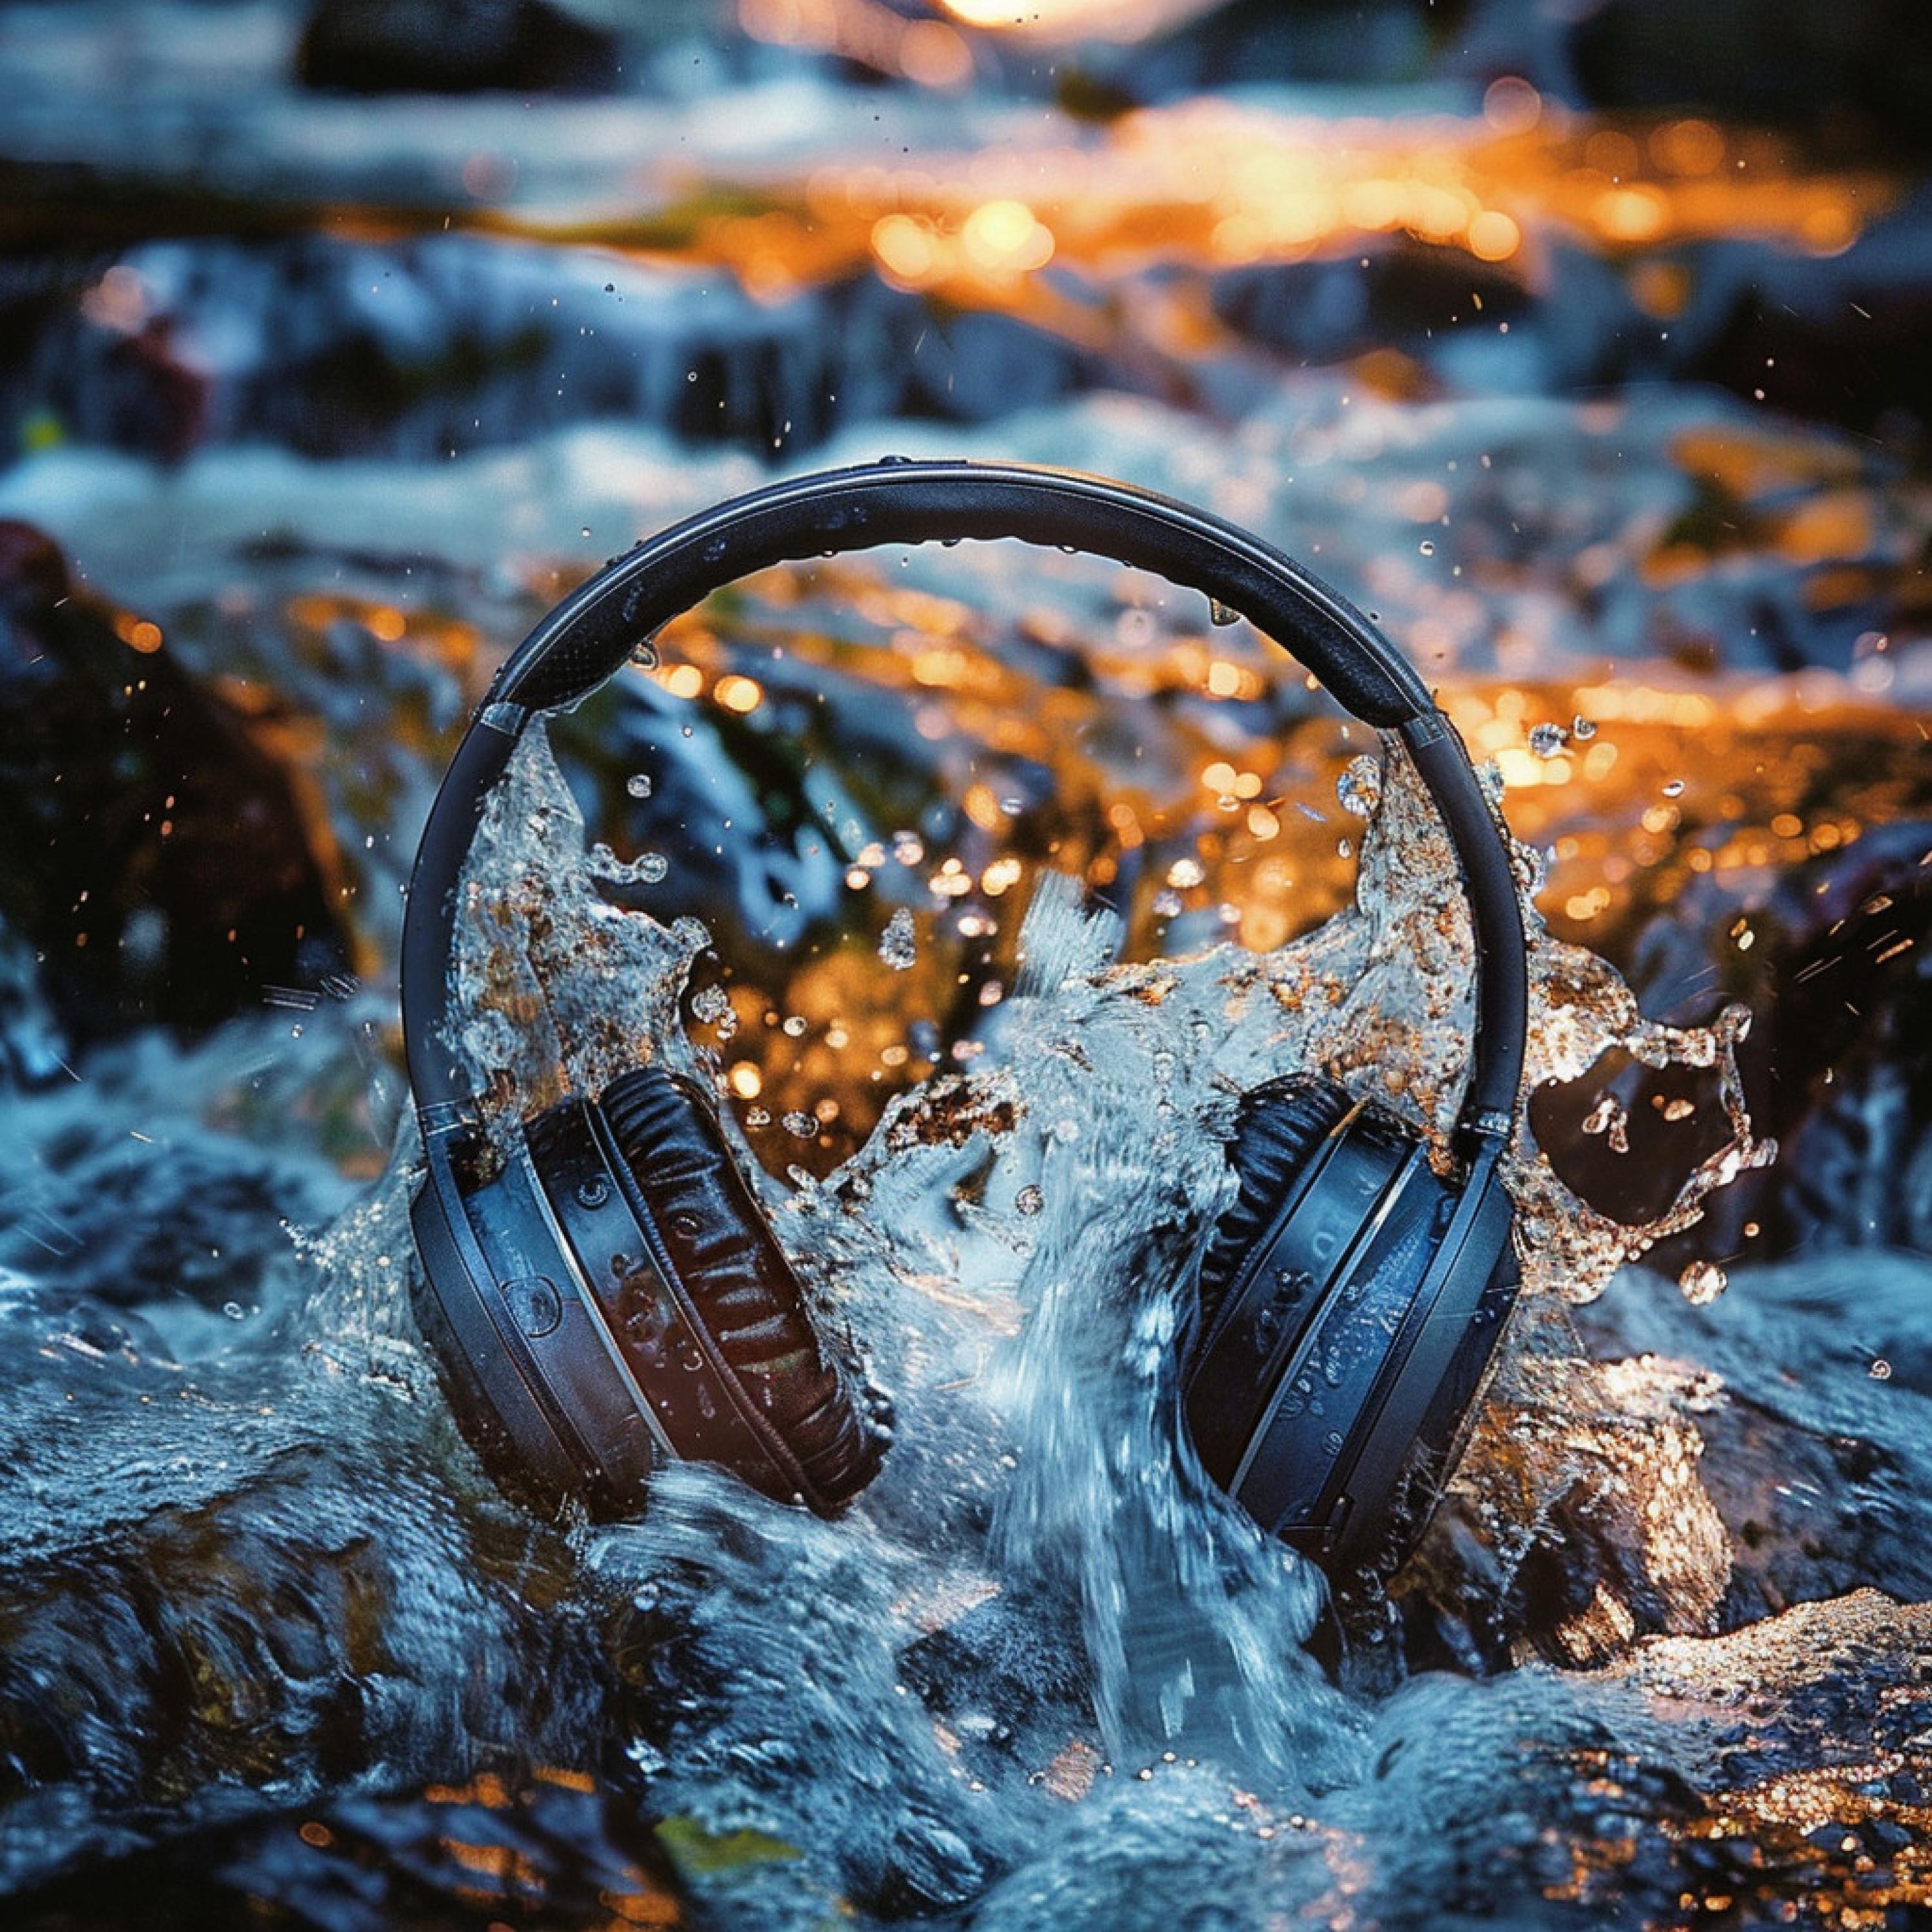 The Calm Factory - Symphony of Stream's Flow